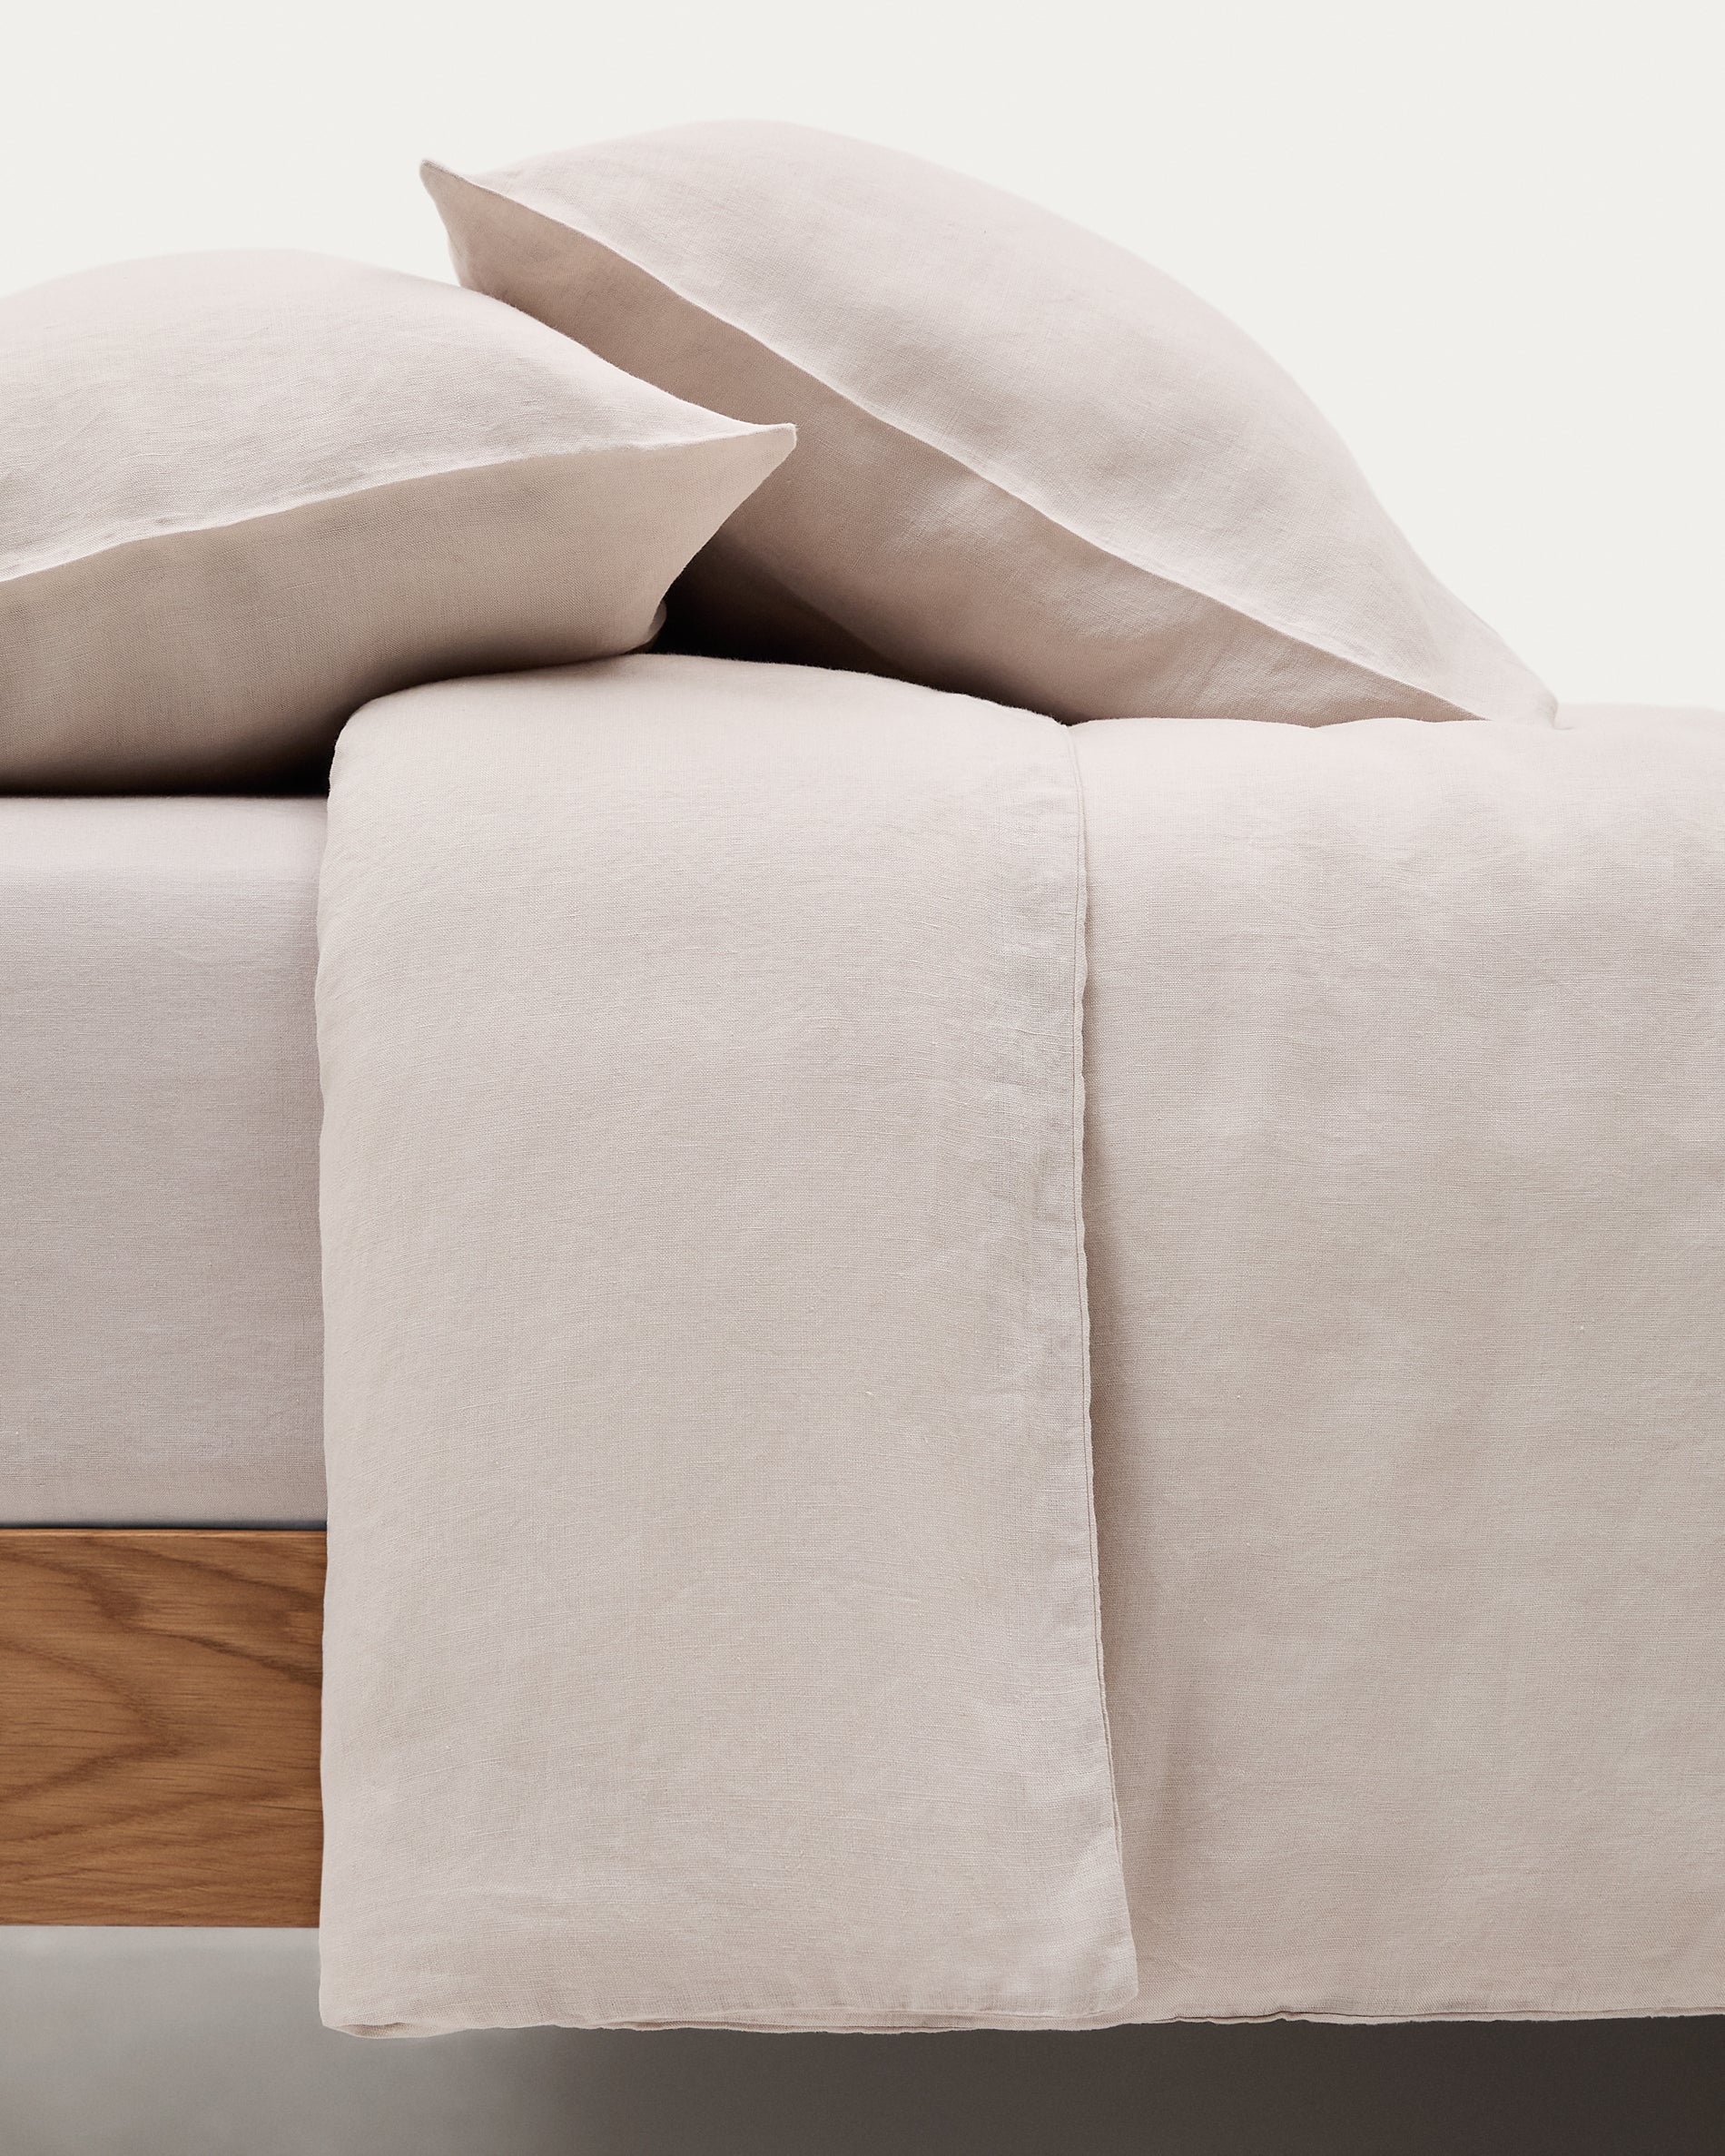 Simmel szürke, pamut és len ágytakaró és párnahuzat szett, 90 cm-es ágyhoz